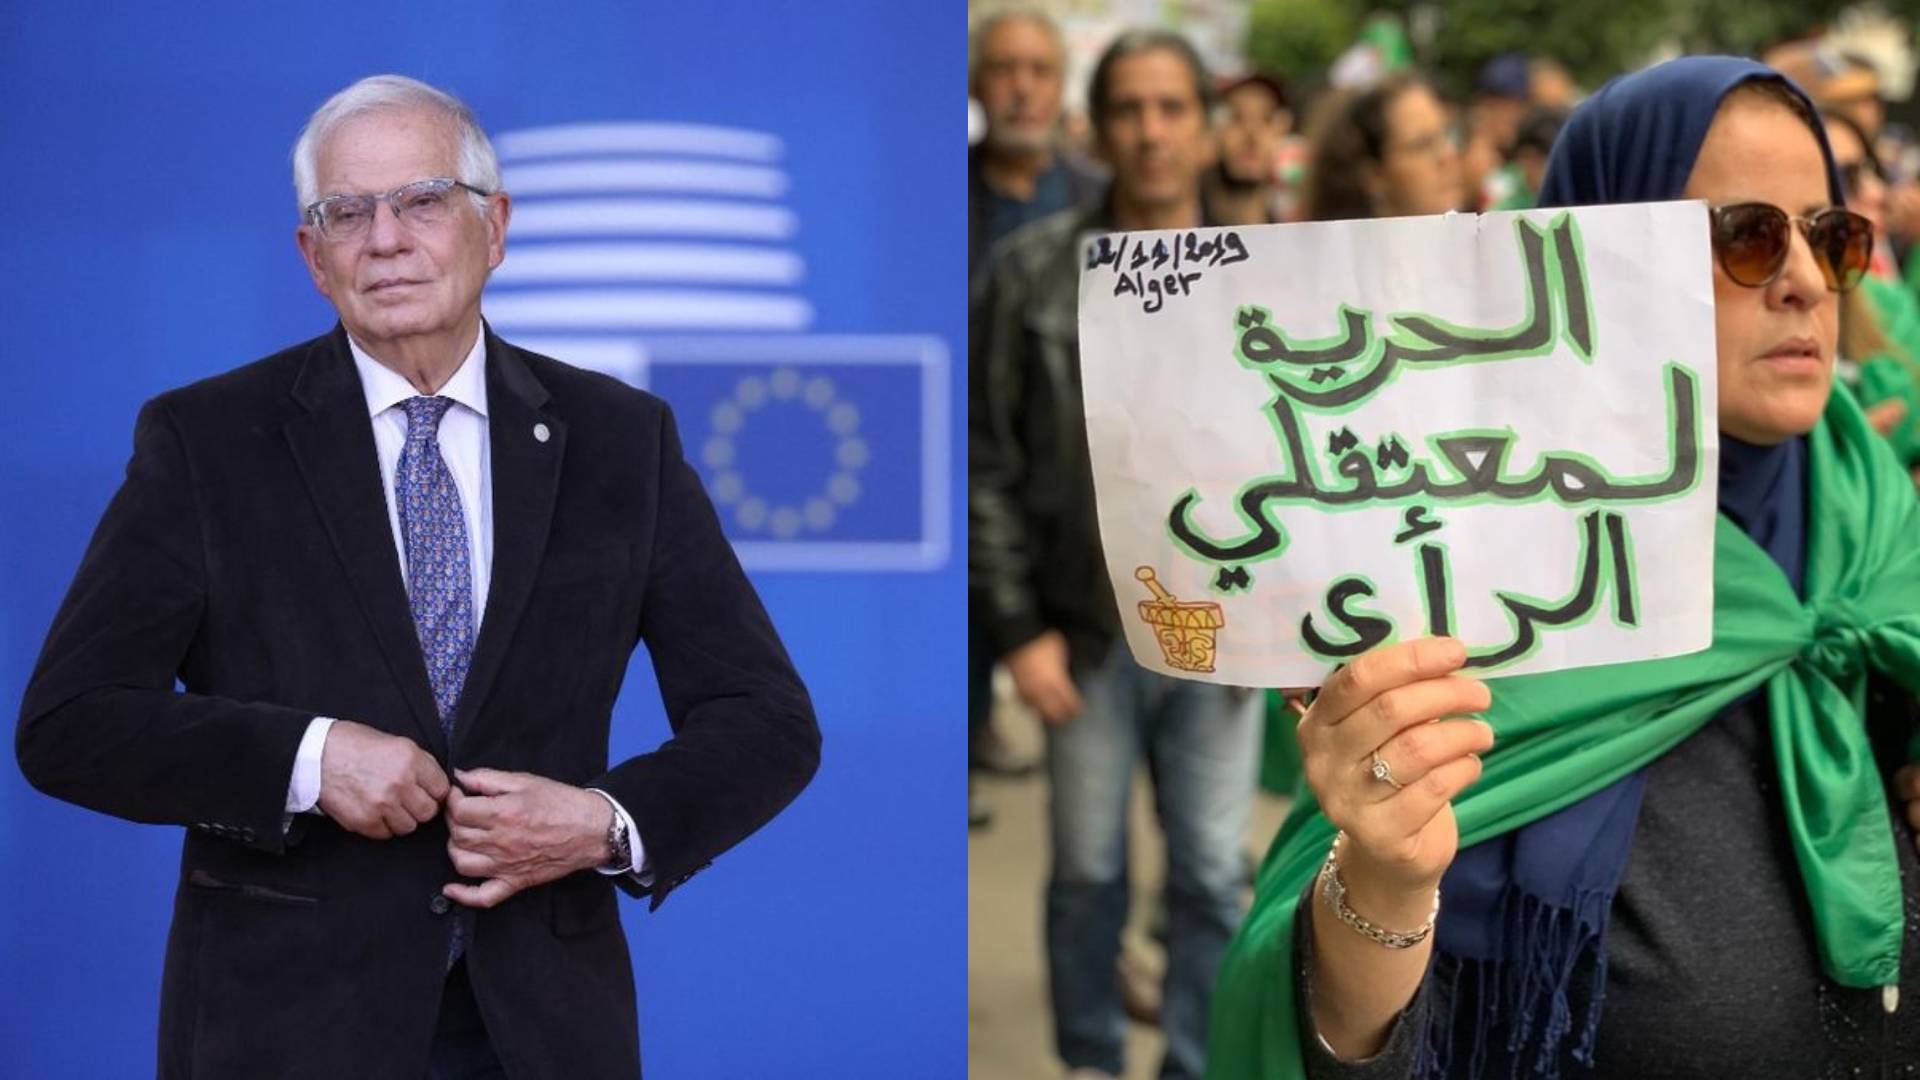 نواب في البرلمان الأوروبي يُراسلون”بوريل” بخصوص معتقلي الرأي والحريات بالجزائر